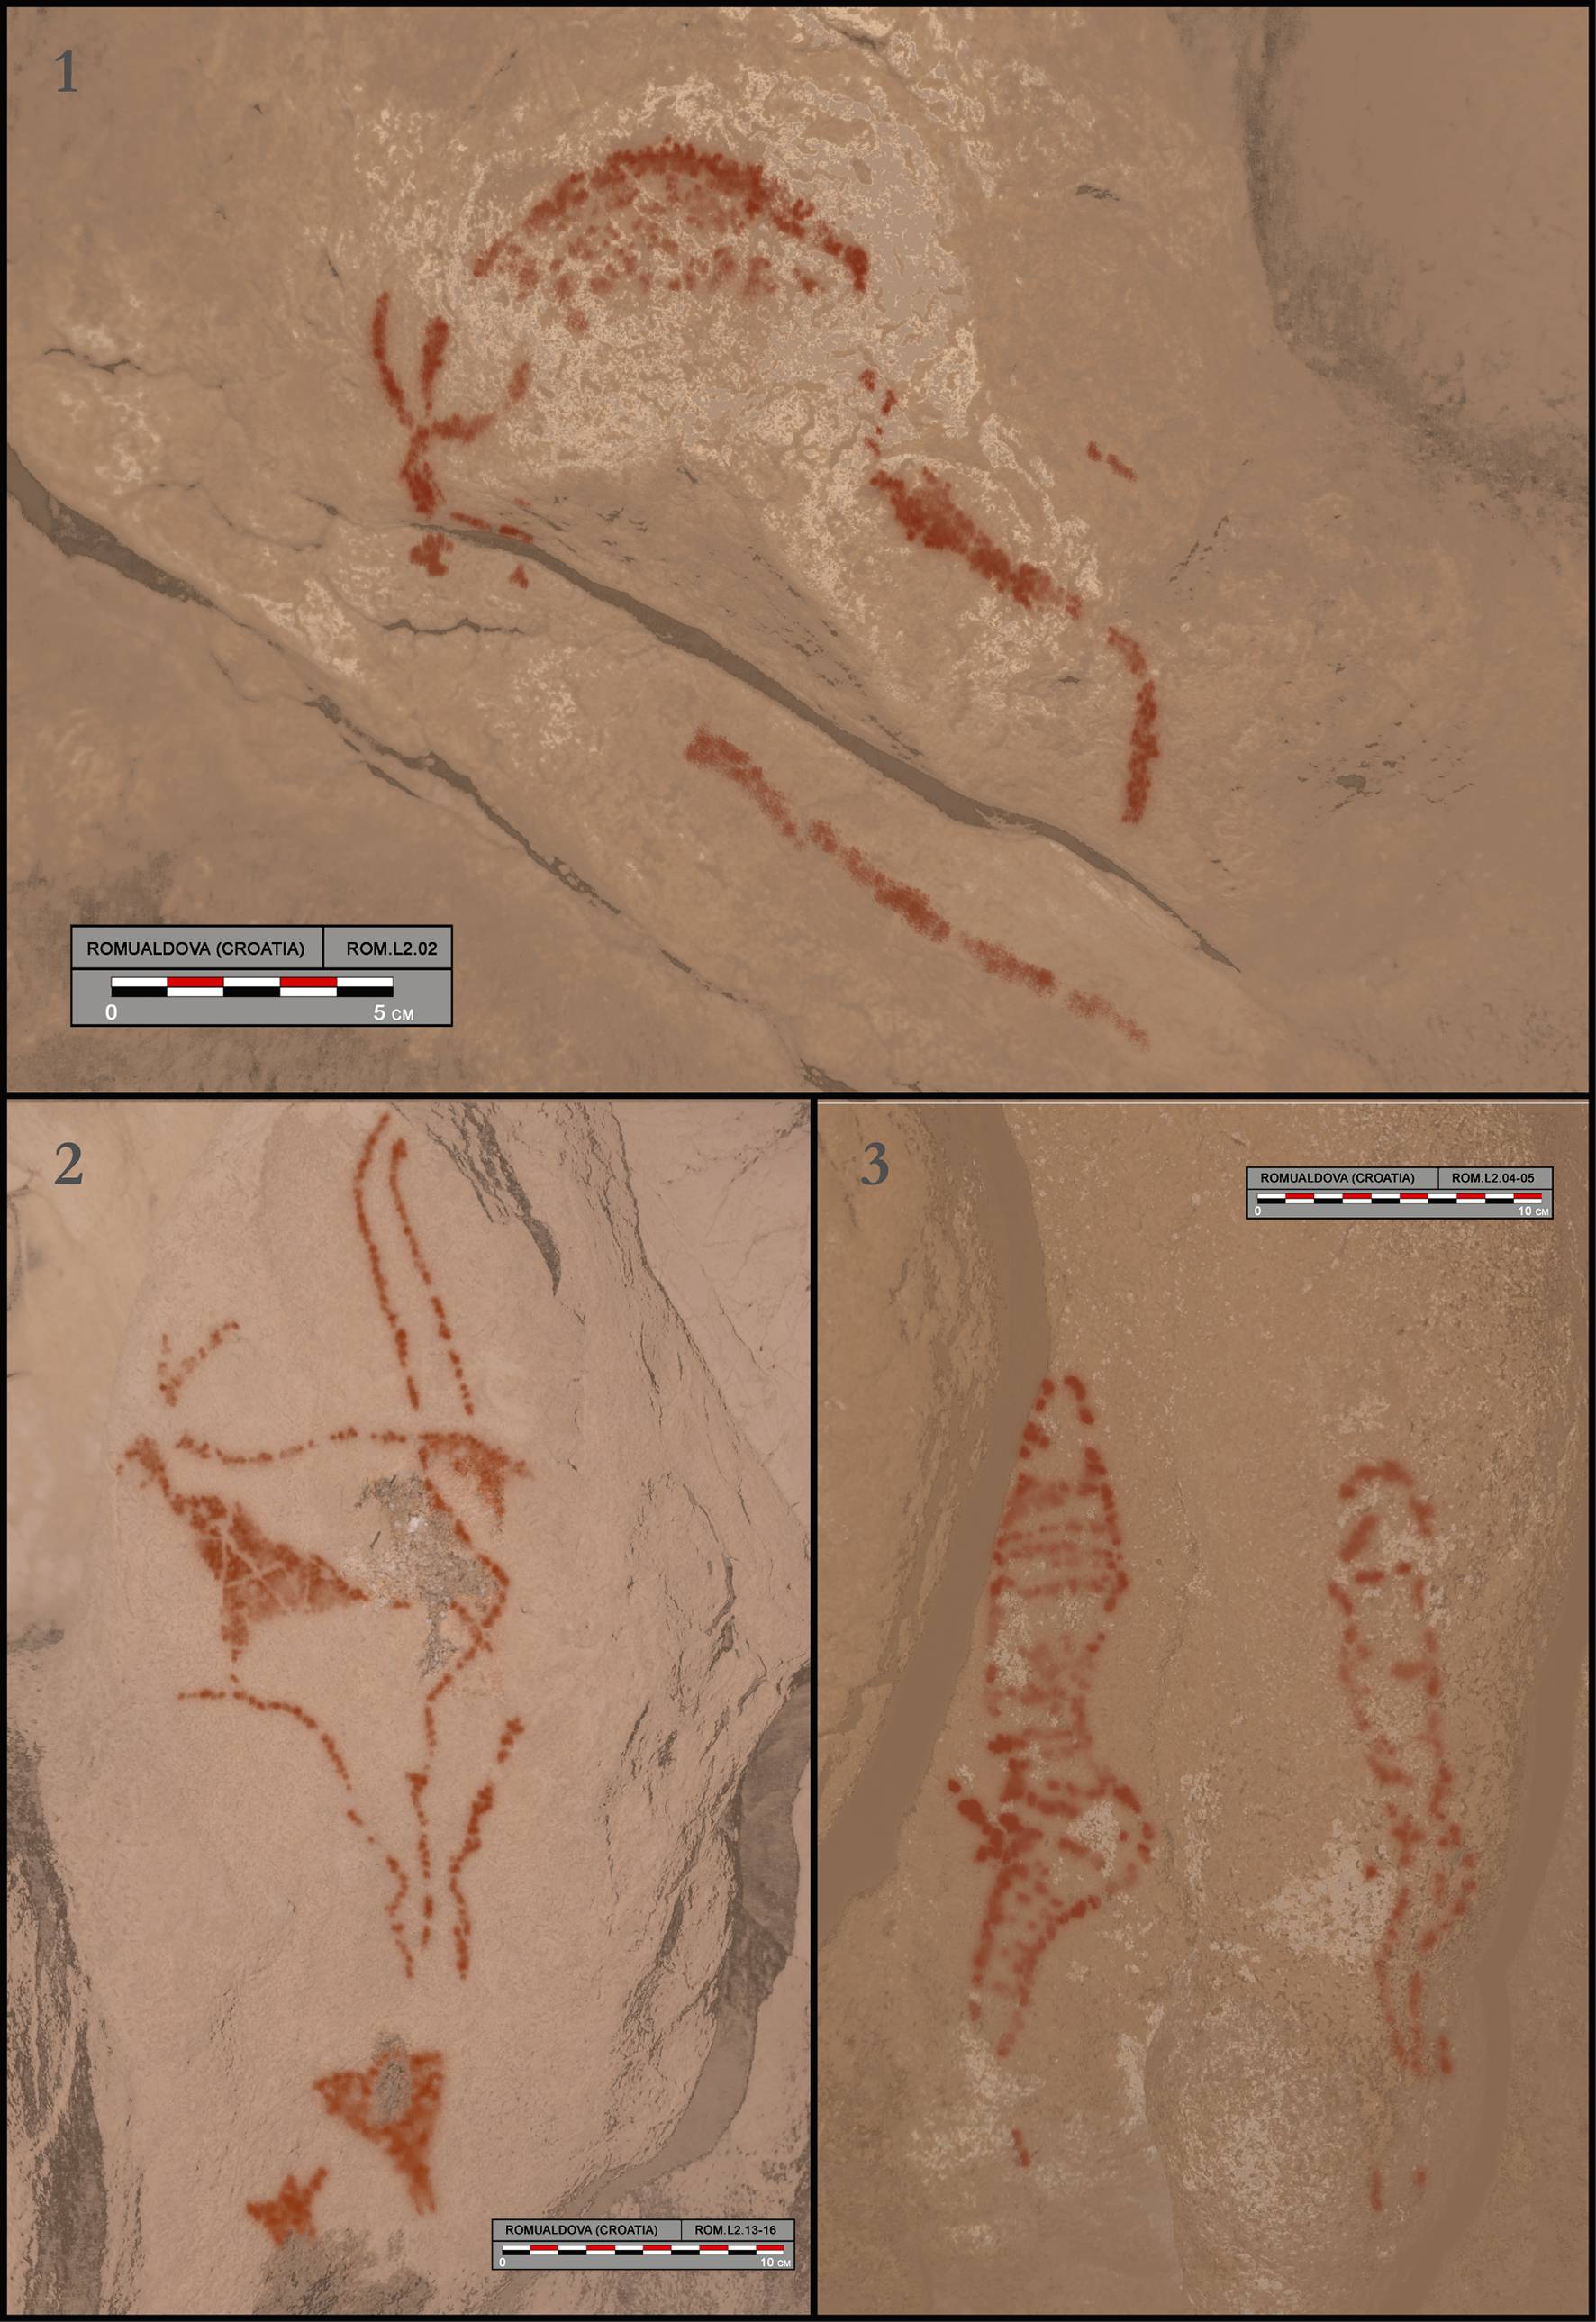 Senzacija: U pećini u Istri našli crteže stare čak 30.000 godina